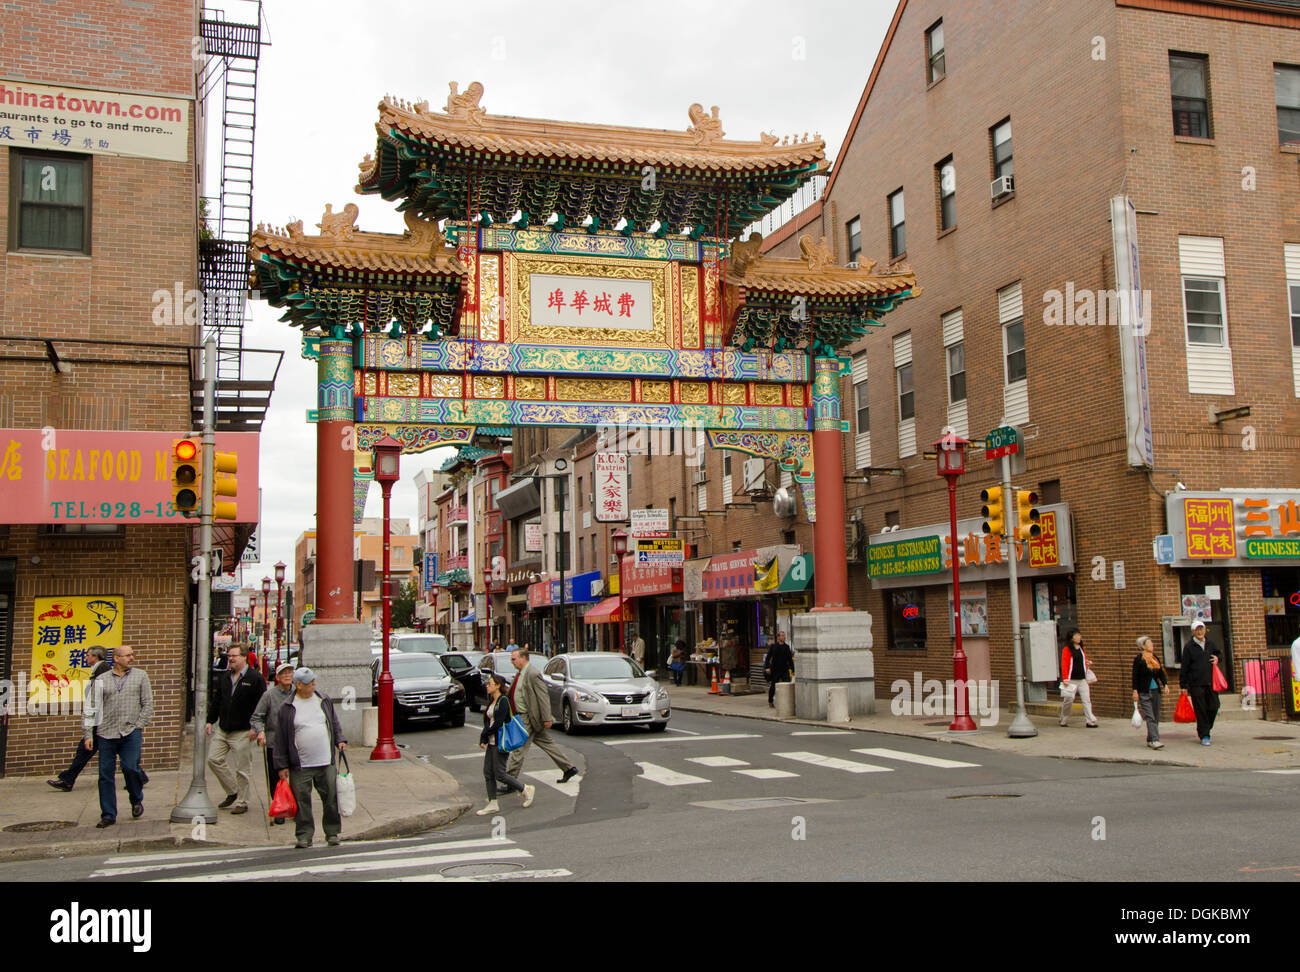 Chinese gate avec arch qui marque l'entrée de Chinatown de Philadelphie, Pennsylvanie, USA. Banque D'Images